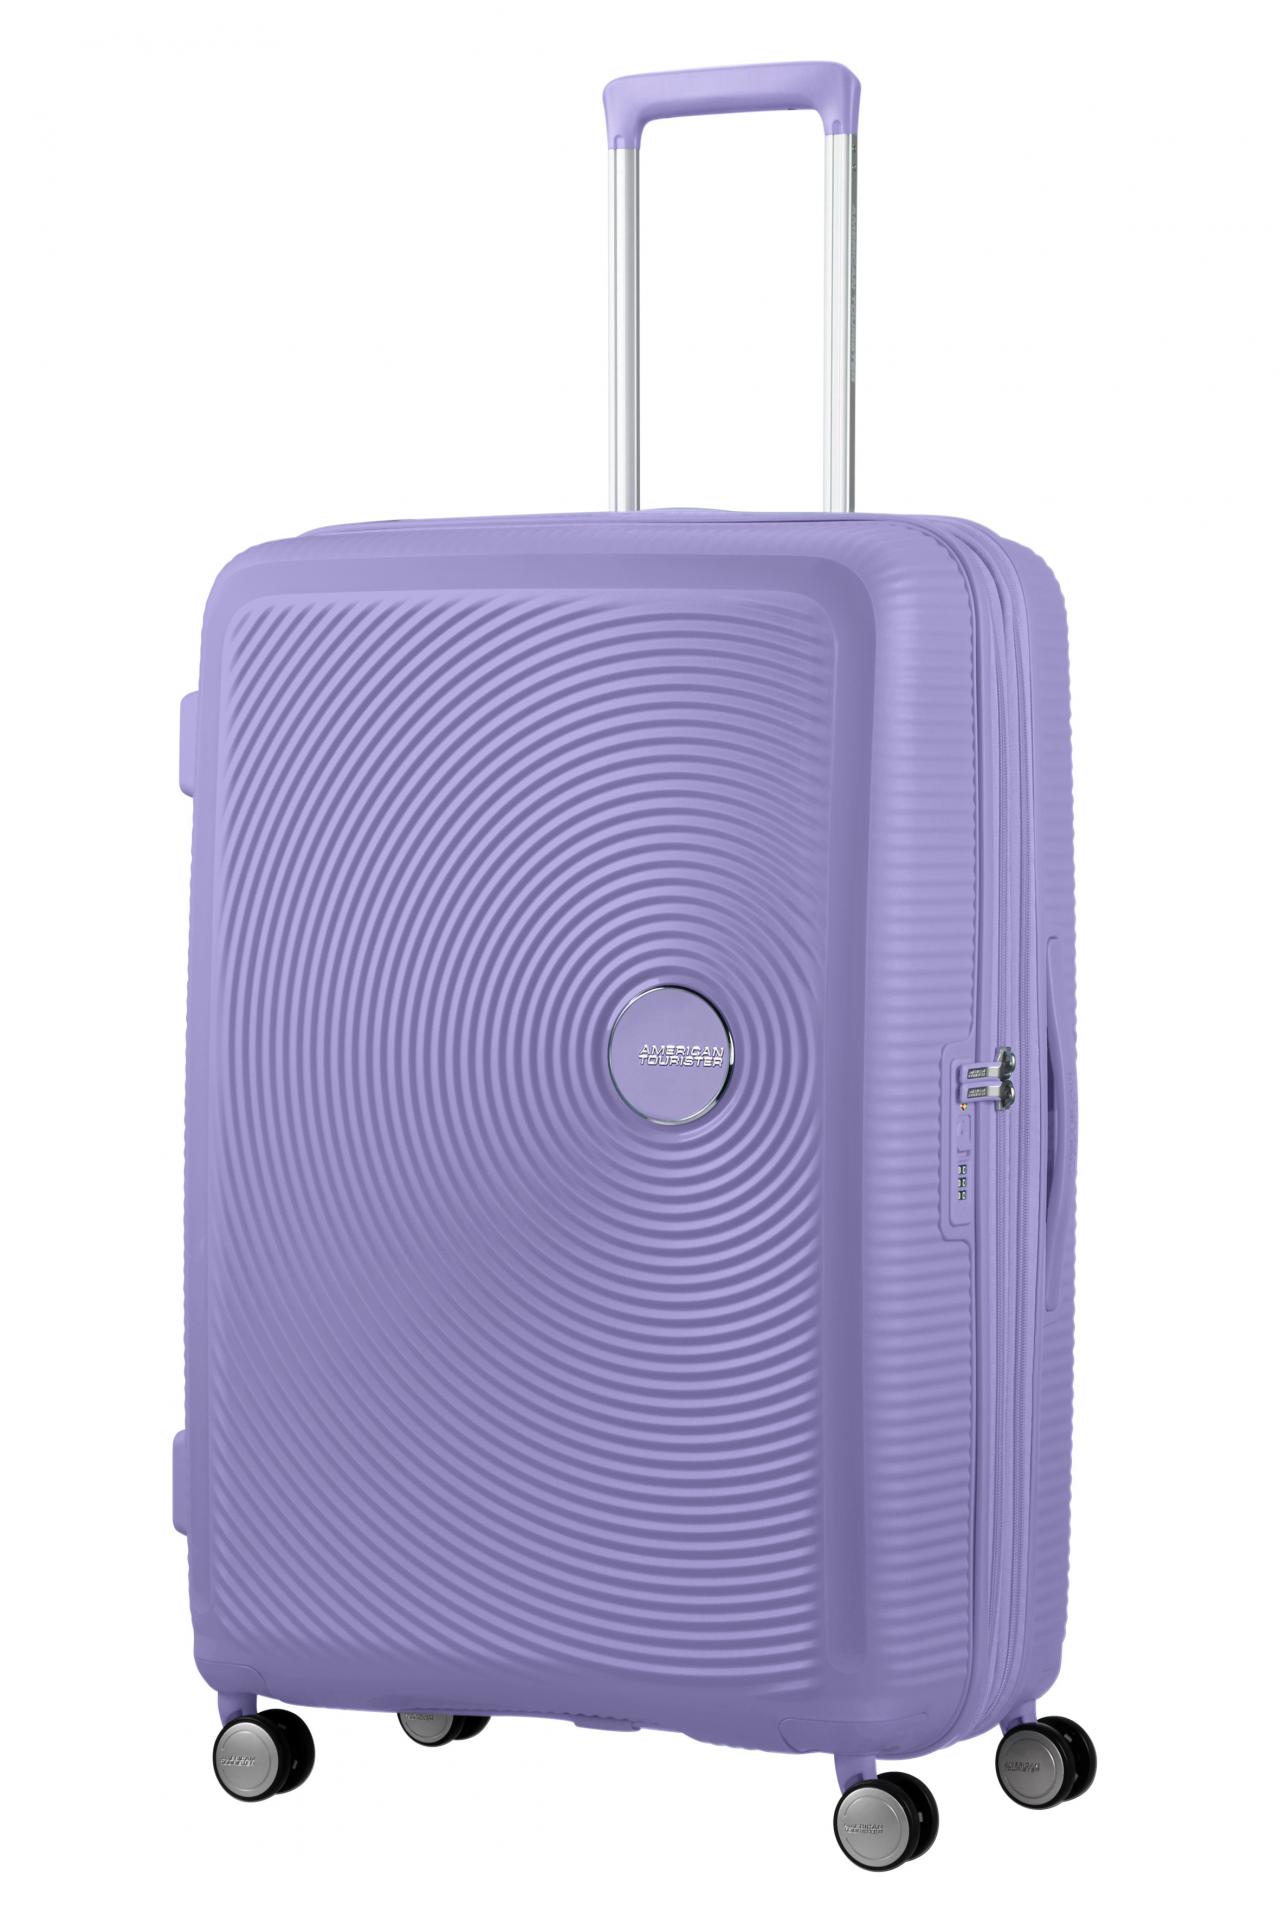  Maleta spinner soundbox exp. 77cm lavender 88474 1491